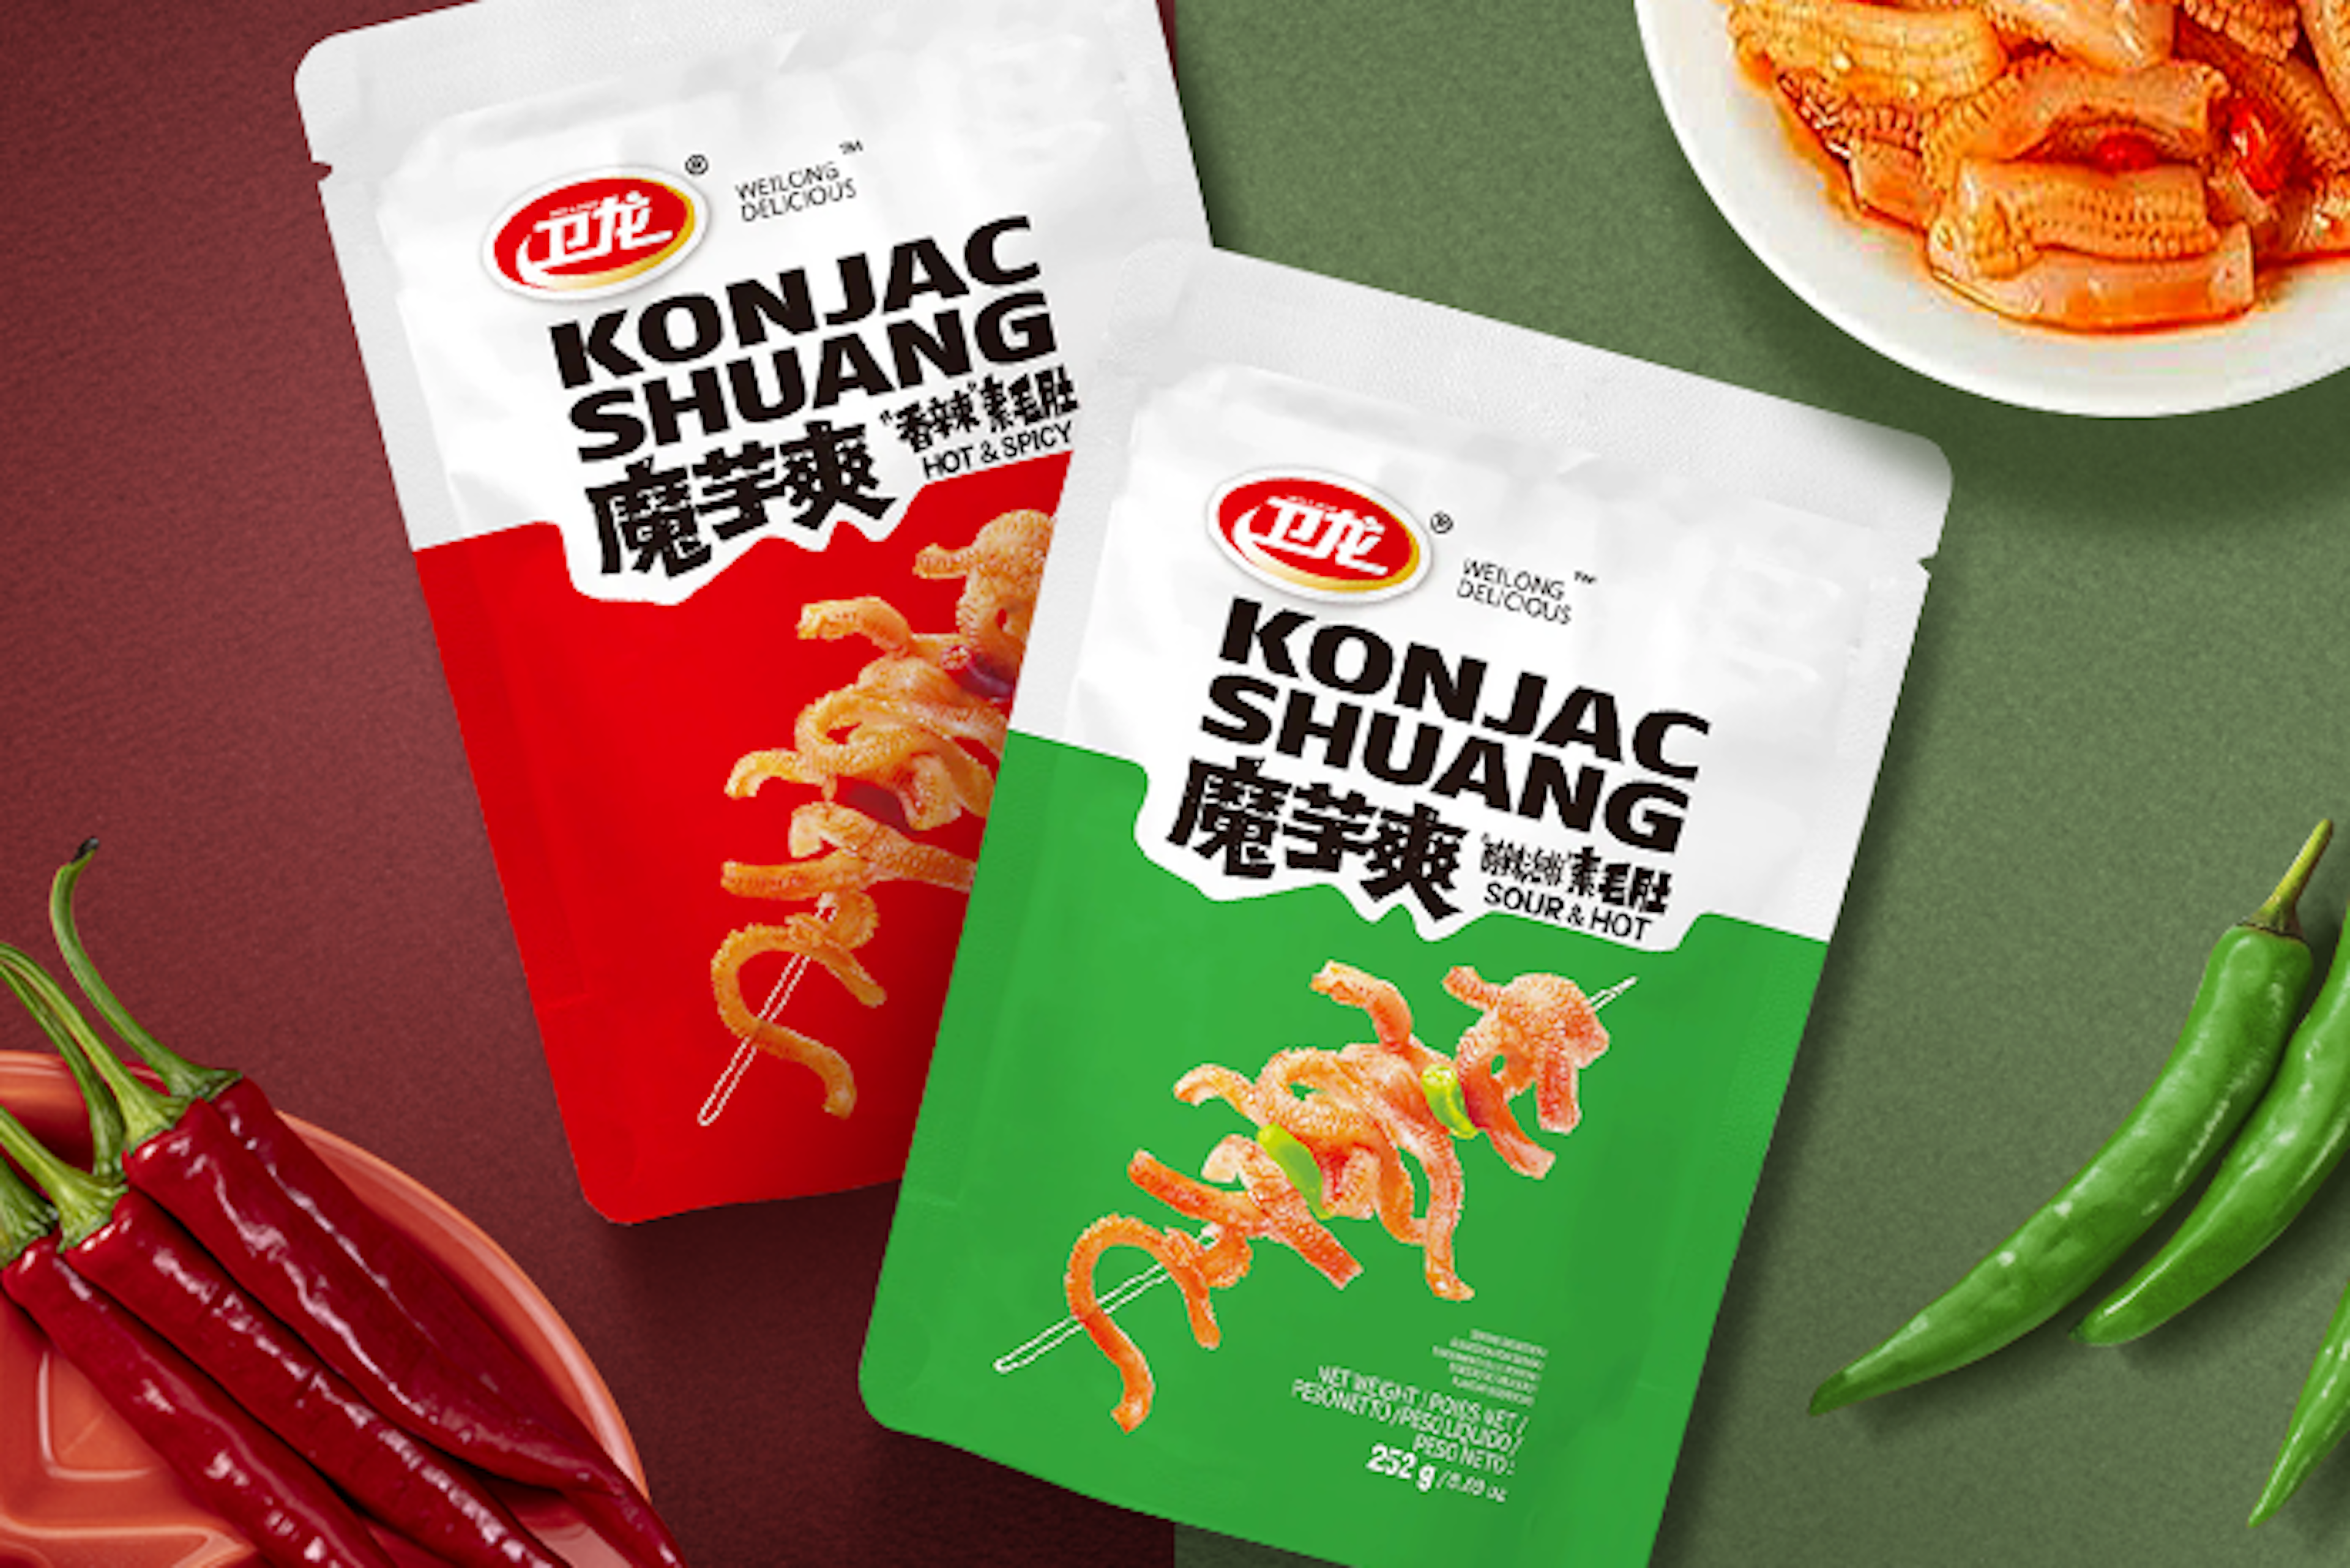 Vorderansicht der Wei Long Konjak Shuang Hot & Spicy 252g Packung.